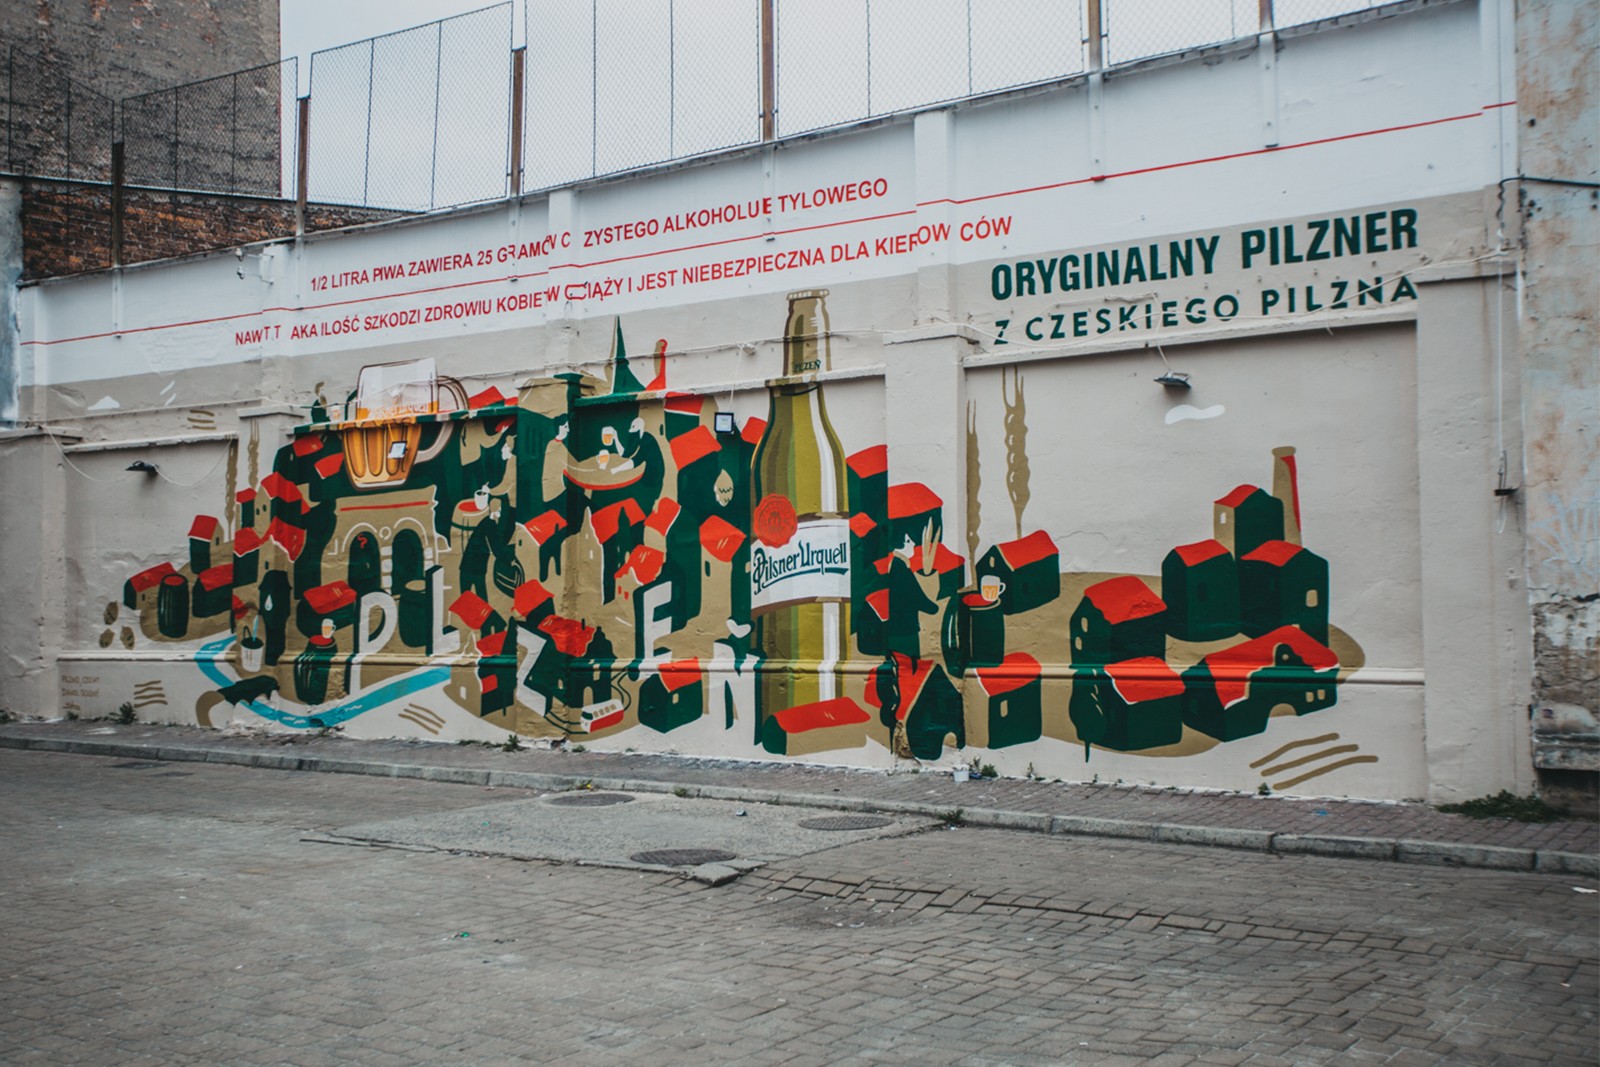 Mural Oryginalny pilzner z czeskiego Pilzna na krakowskim Tytano | Original pilsner from Czech Pilsen | Portfolio